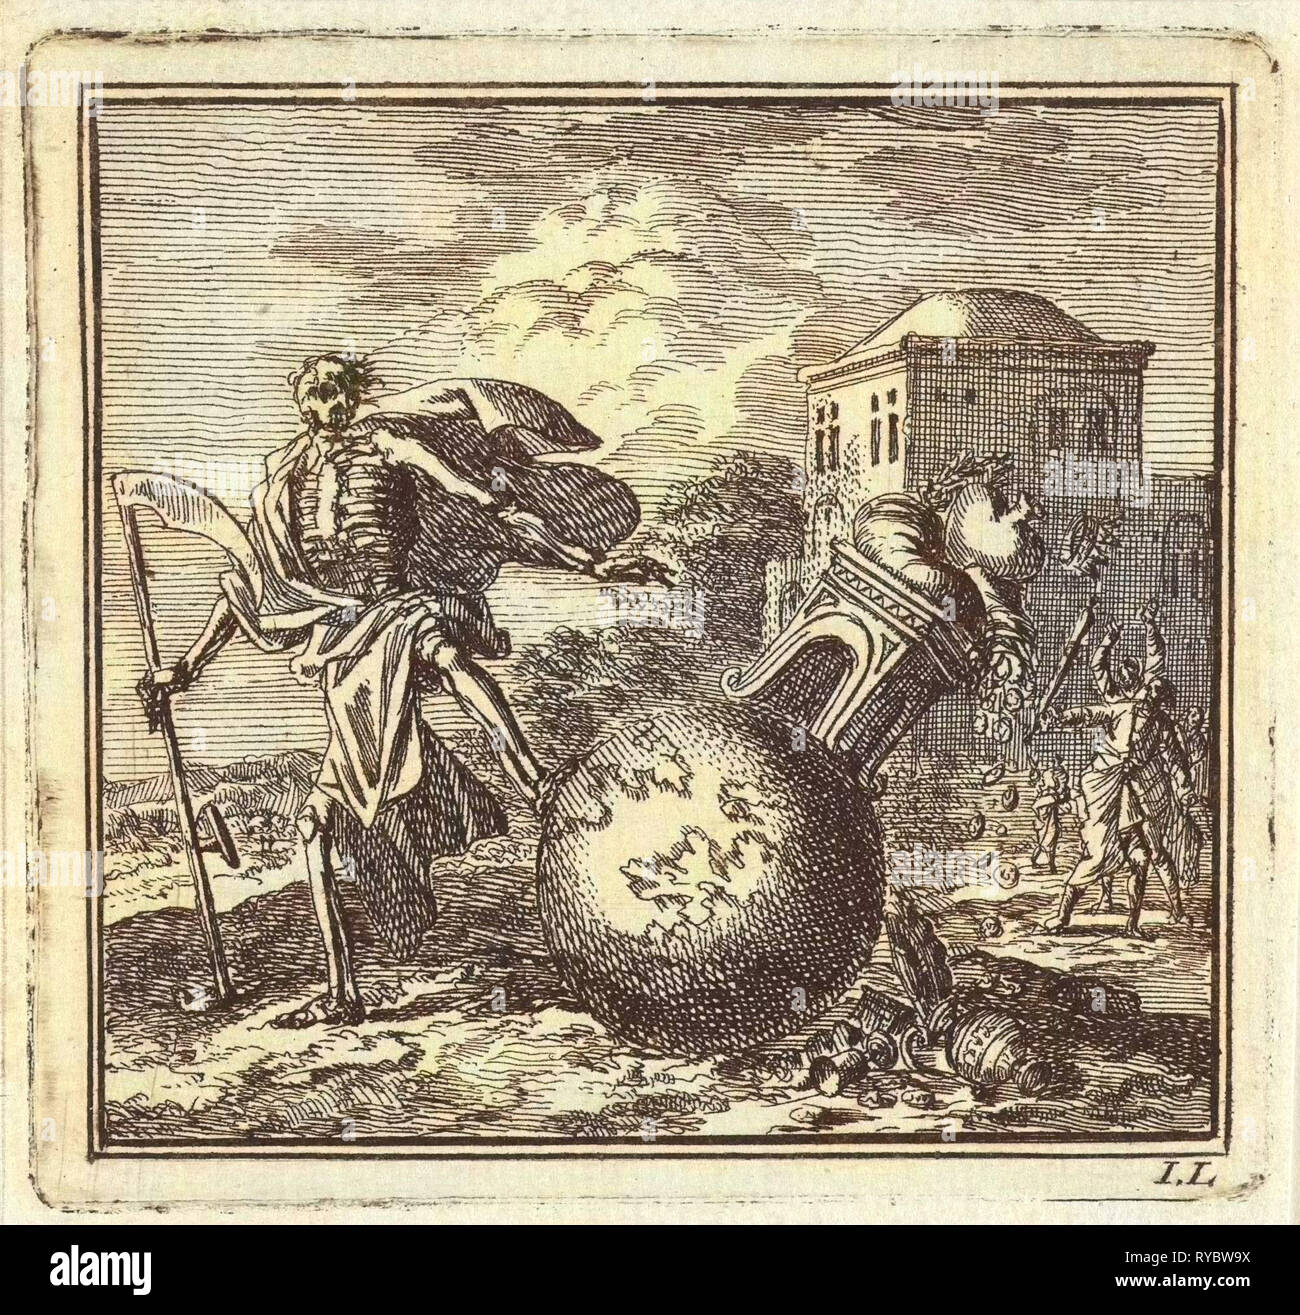 La mort frappe la planète, Jan Luyken, mer. Arentsz & Pieter Cornelis van der Sys (II), 1710 Banque D'Images